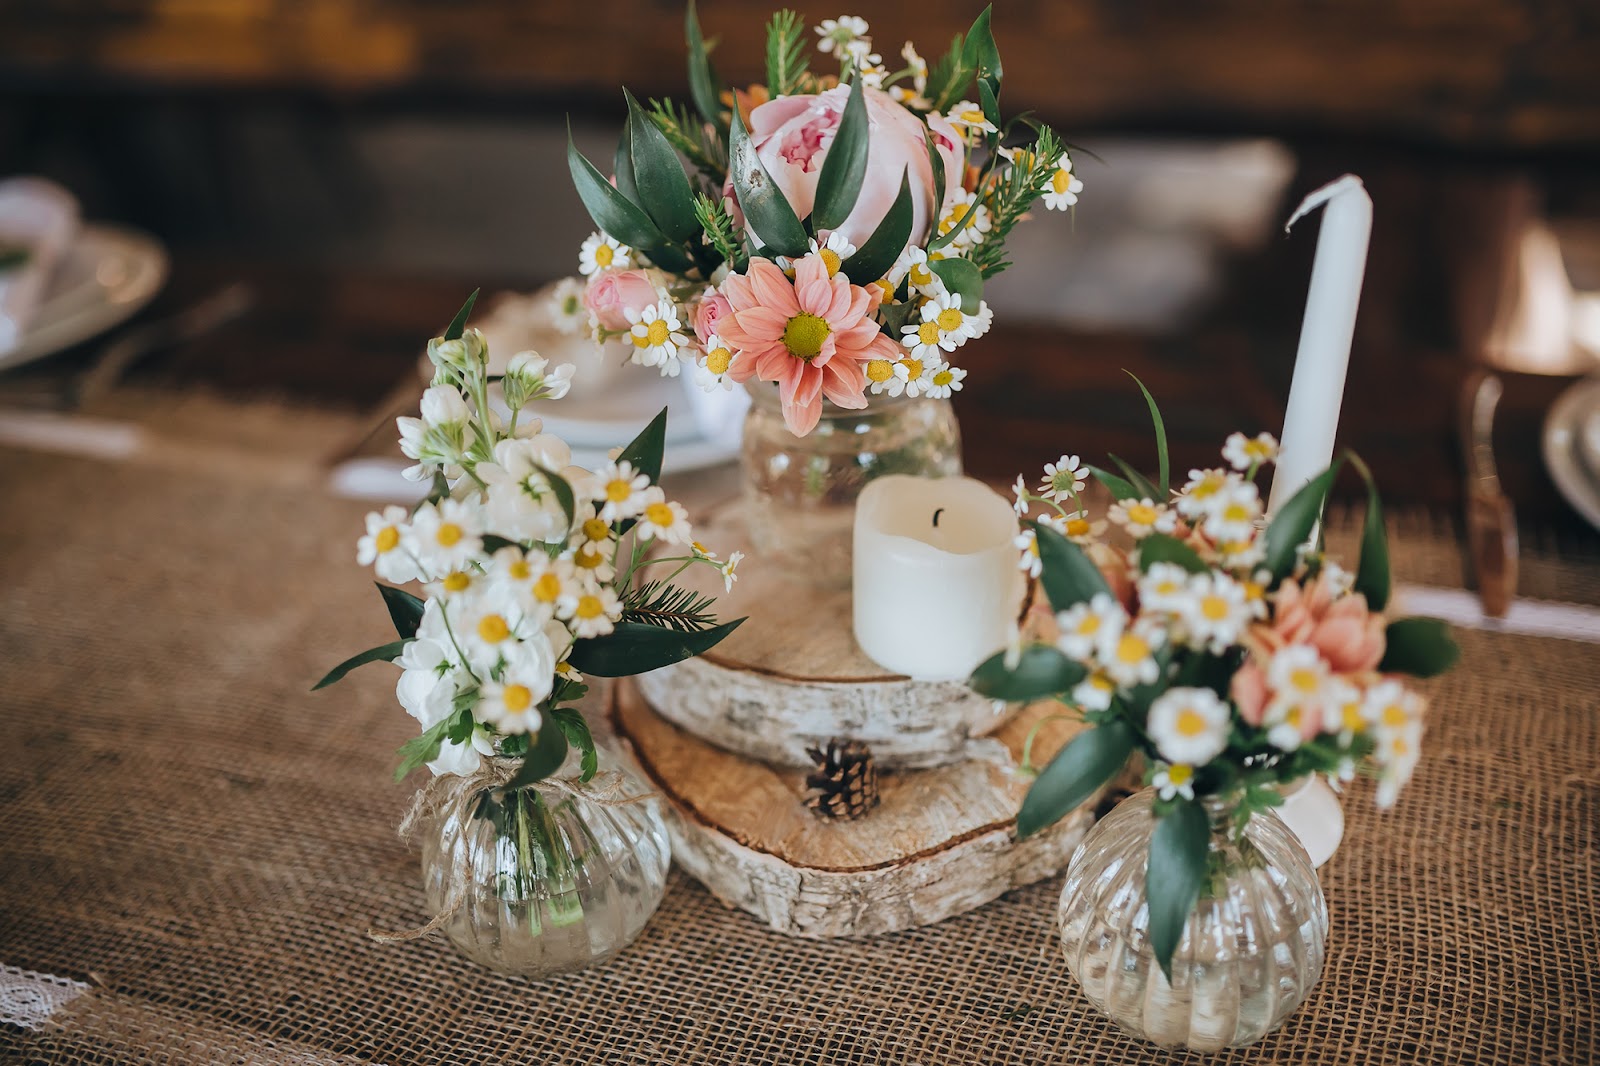 Lựa chọn hoa theo mùa là gợi ý khá hay giúp bạn trang trí bàn đón khách tiết kiệm